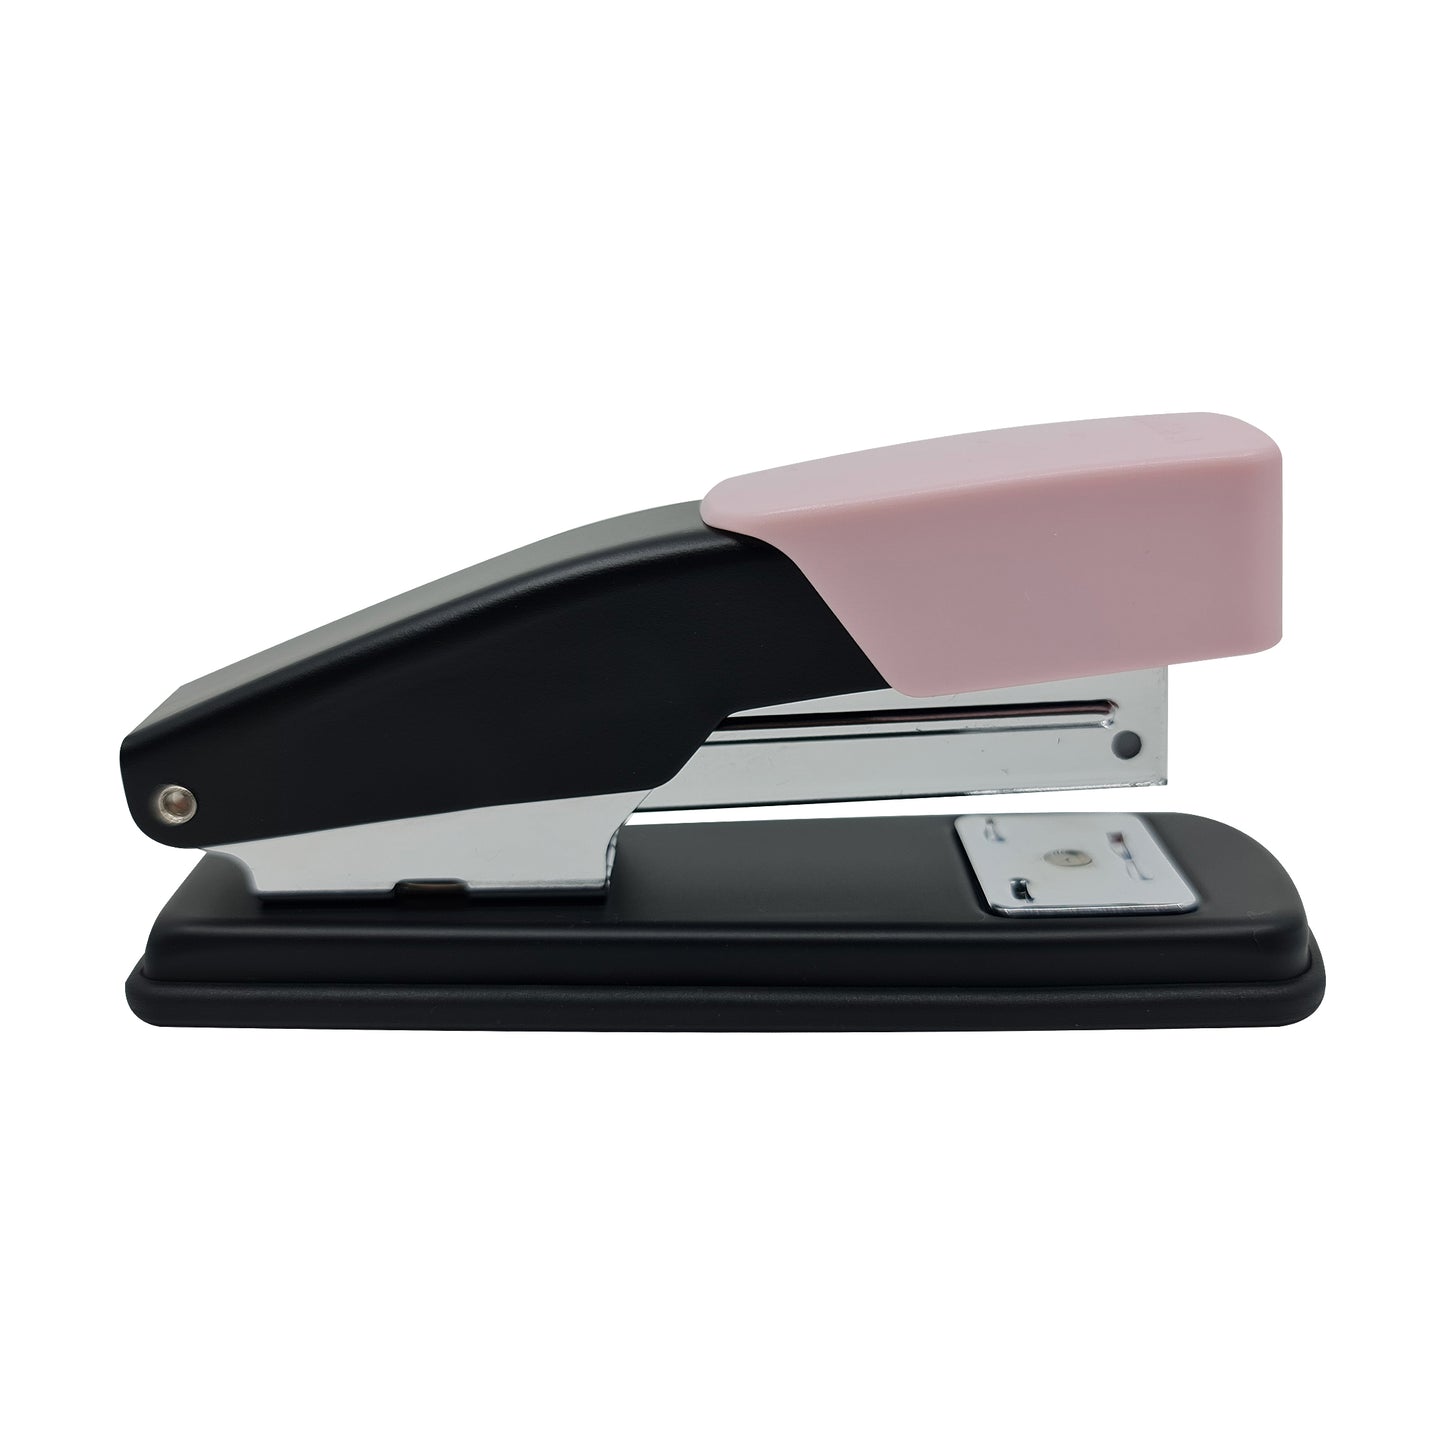 DOUBLE A stapler